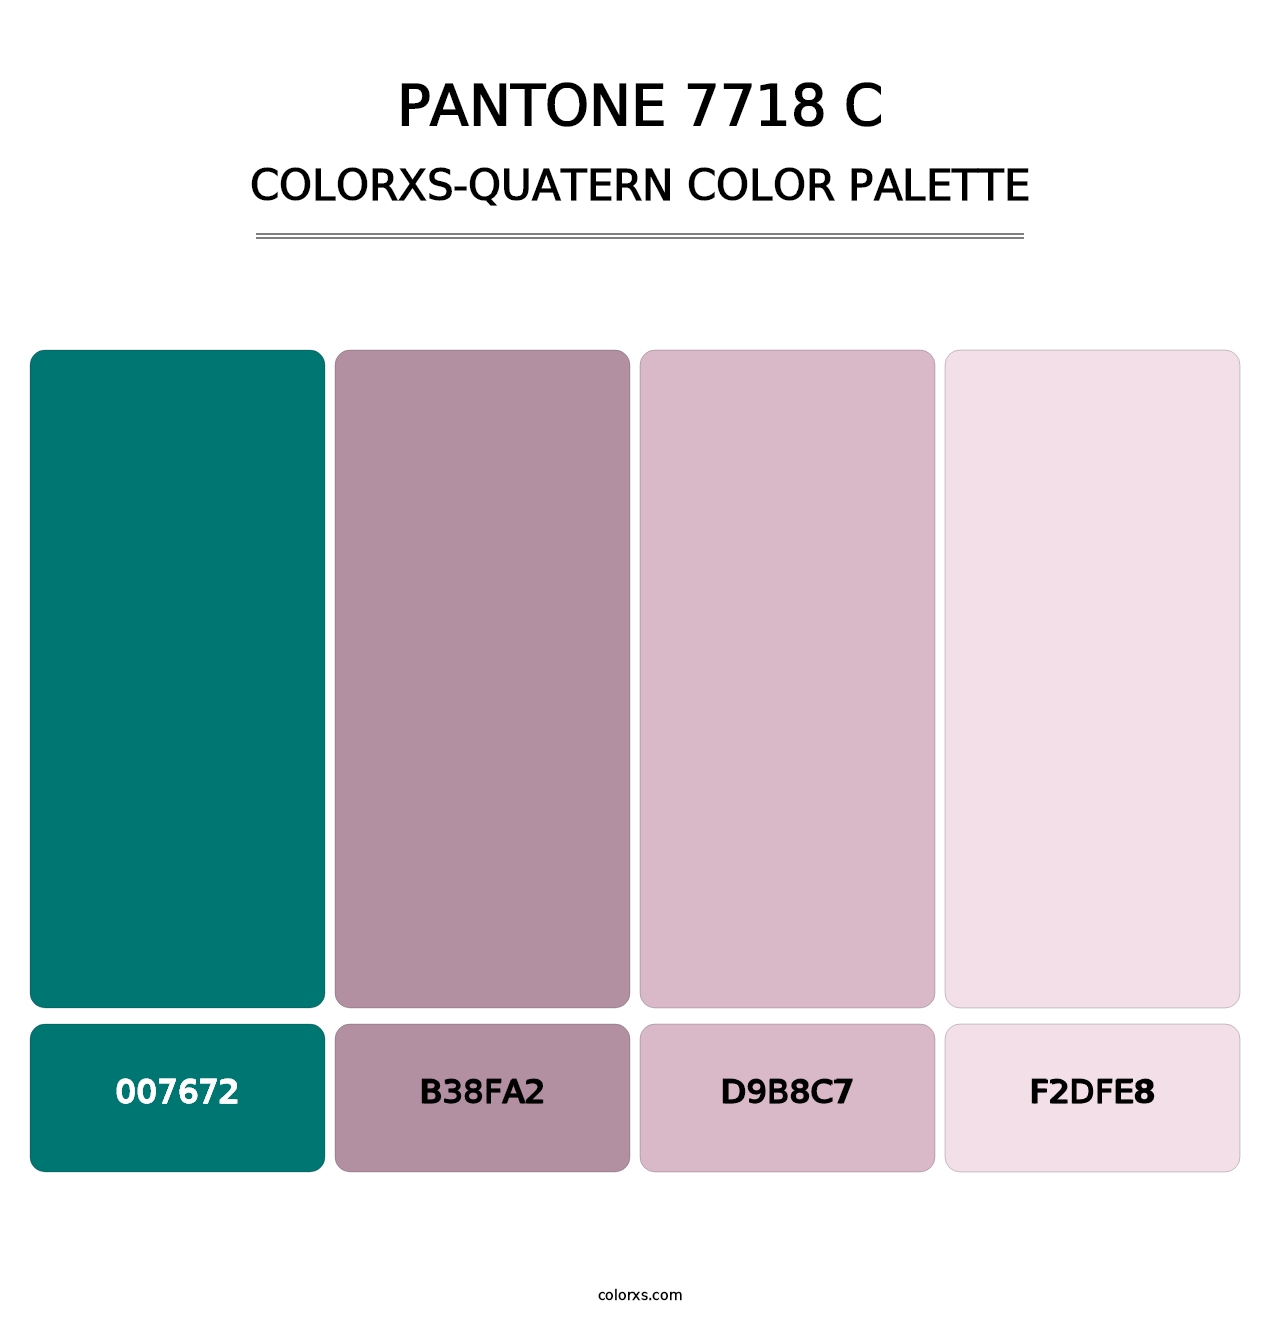 PANTONE 7718 C - Colorxs Quatern Palette